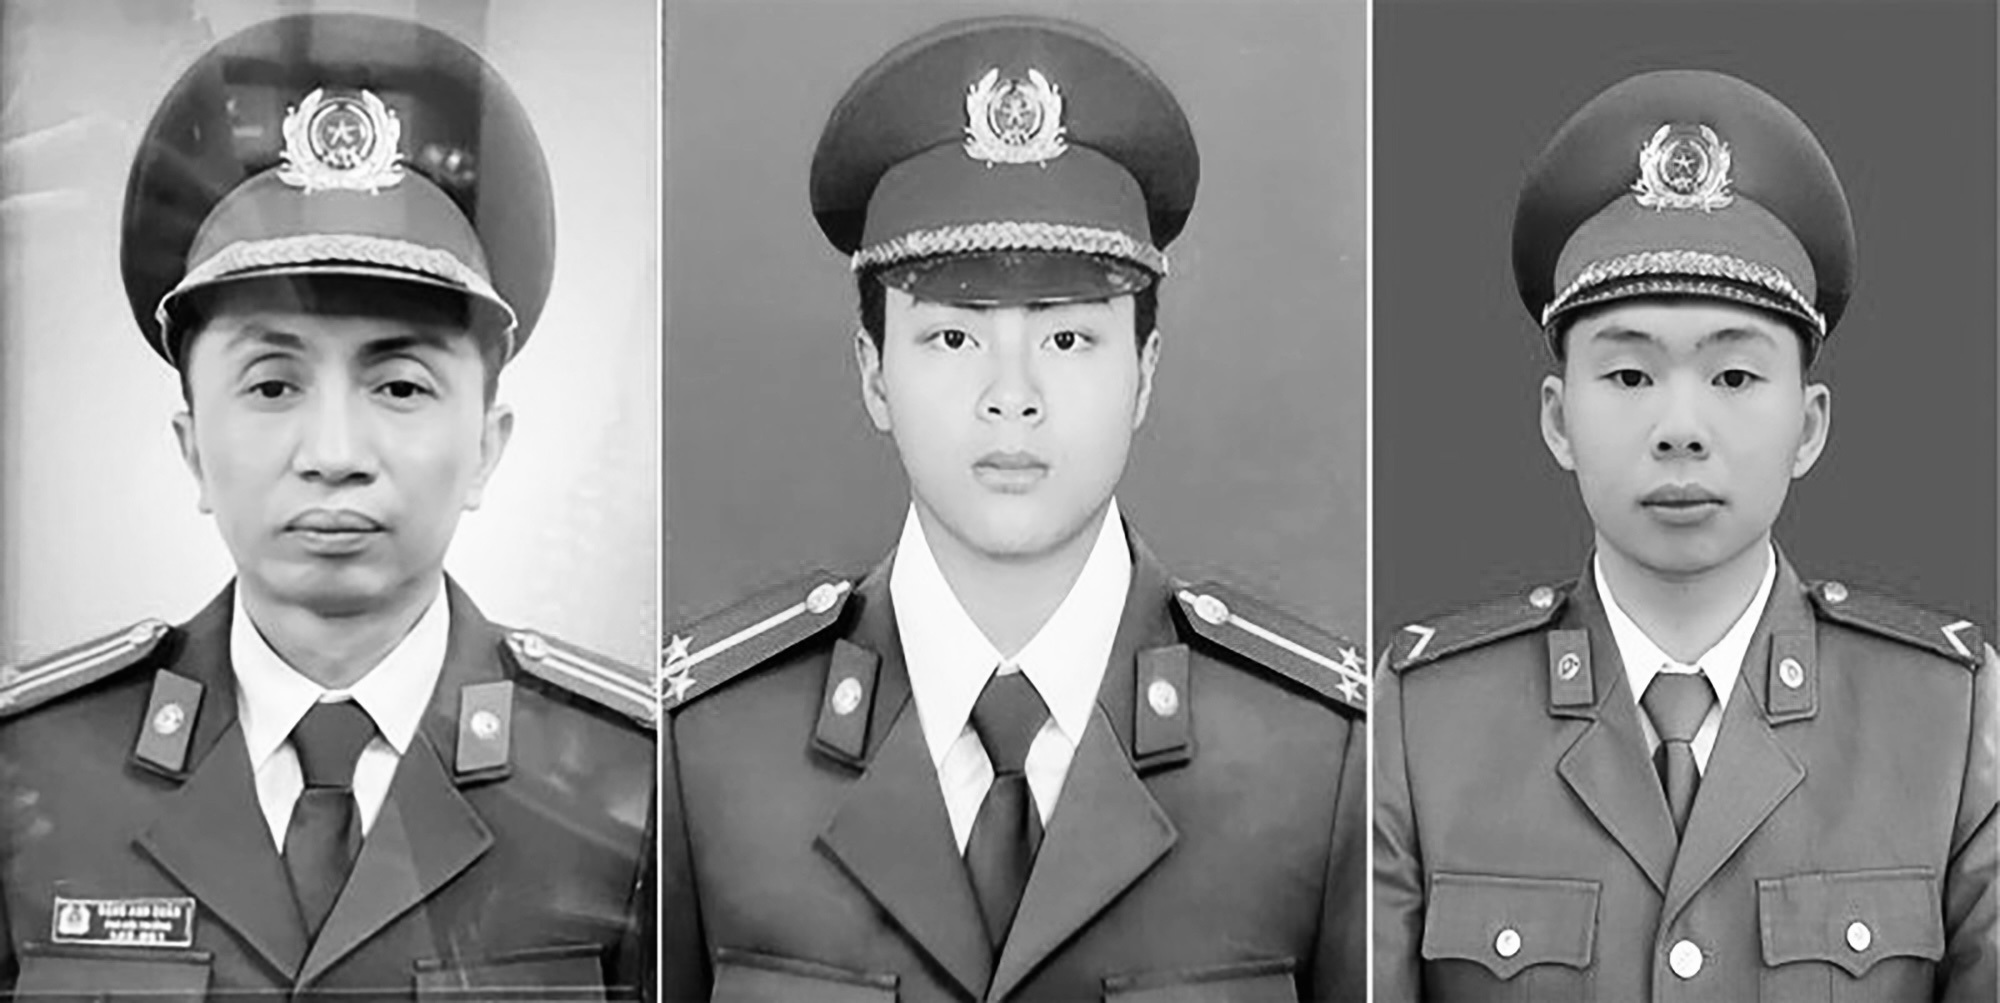 Đồng đội của 3 chiến sĩ hy sinh trong đám cháy ở Hà Nội lặng người, rơi nước mắt: ‘Chúng tôi cứu được người dân nhưng mất đồng đội’ - Ảnh 1